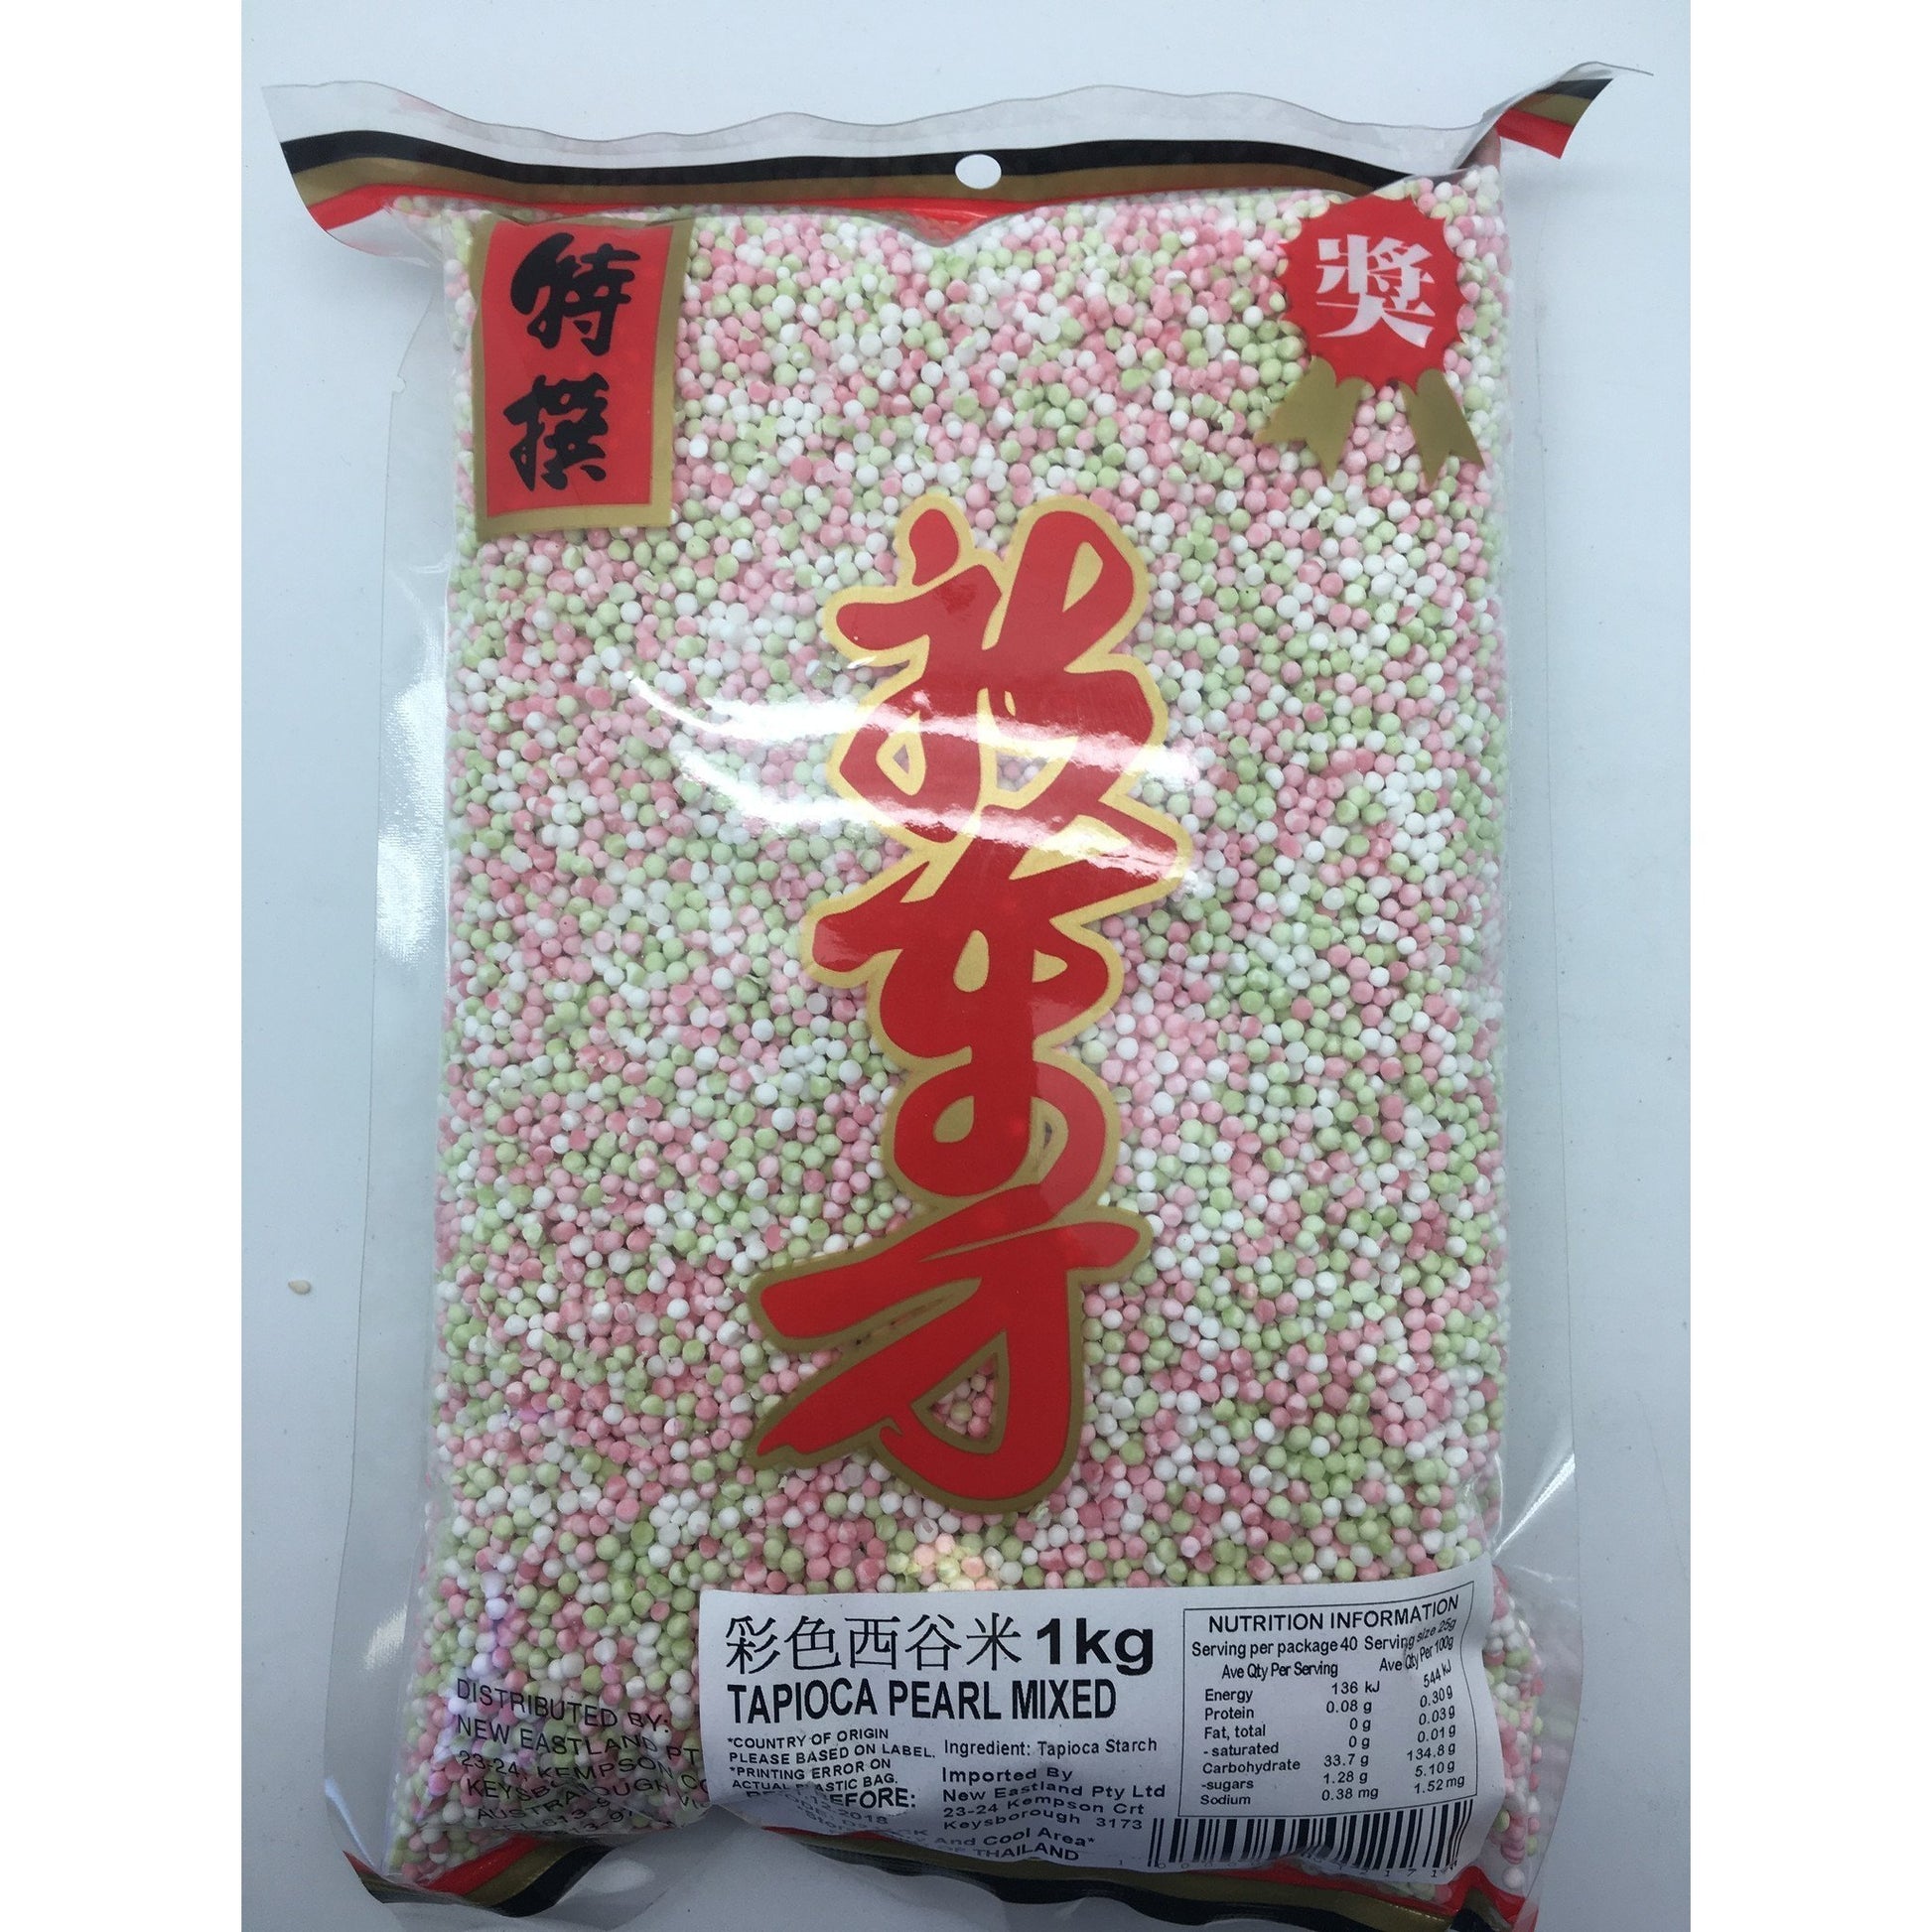 D217CK New Eastland Pty Ltd - Dried Tapioca pearls Mixed 1kg - 50 bags / 1 CTN - New Eastland Pty Ltd - Asian food wholesalers